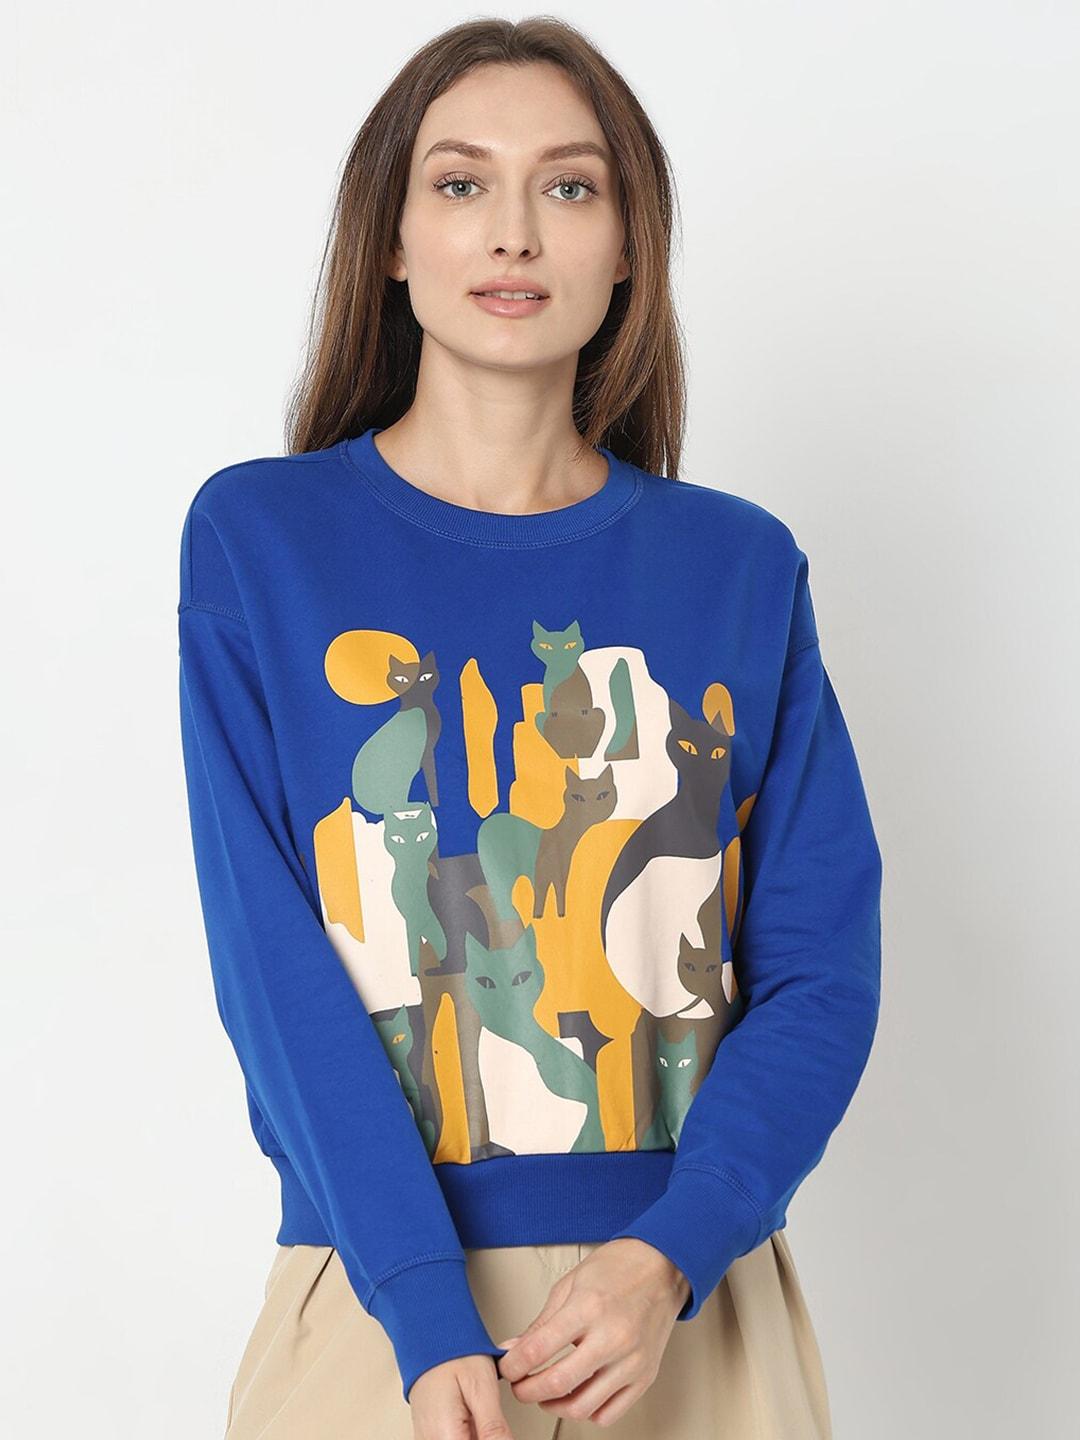 vero-moda-graphic-printed-pure-cotton-pullover-sweatshirt